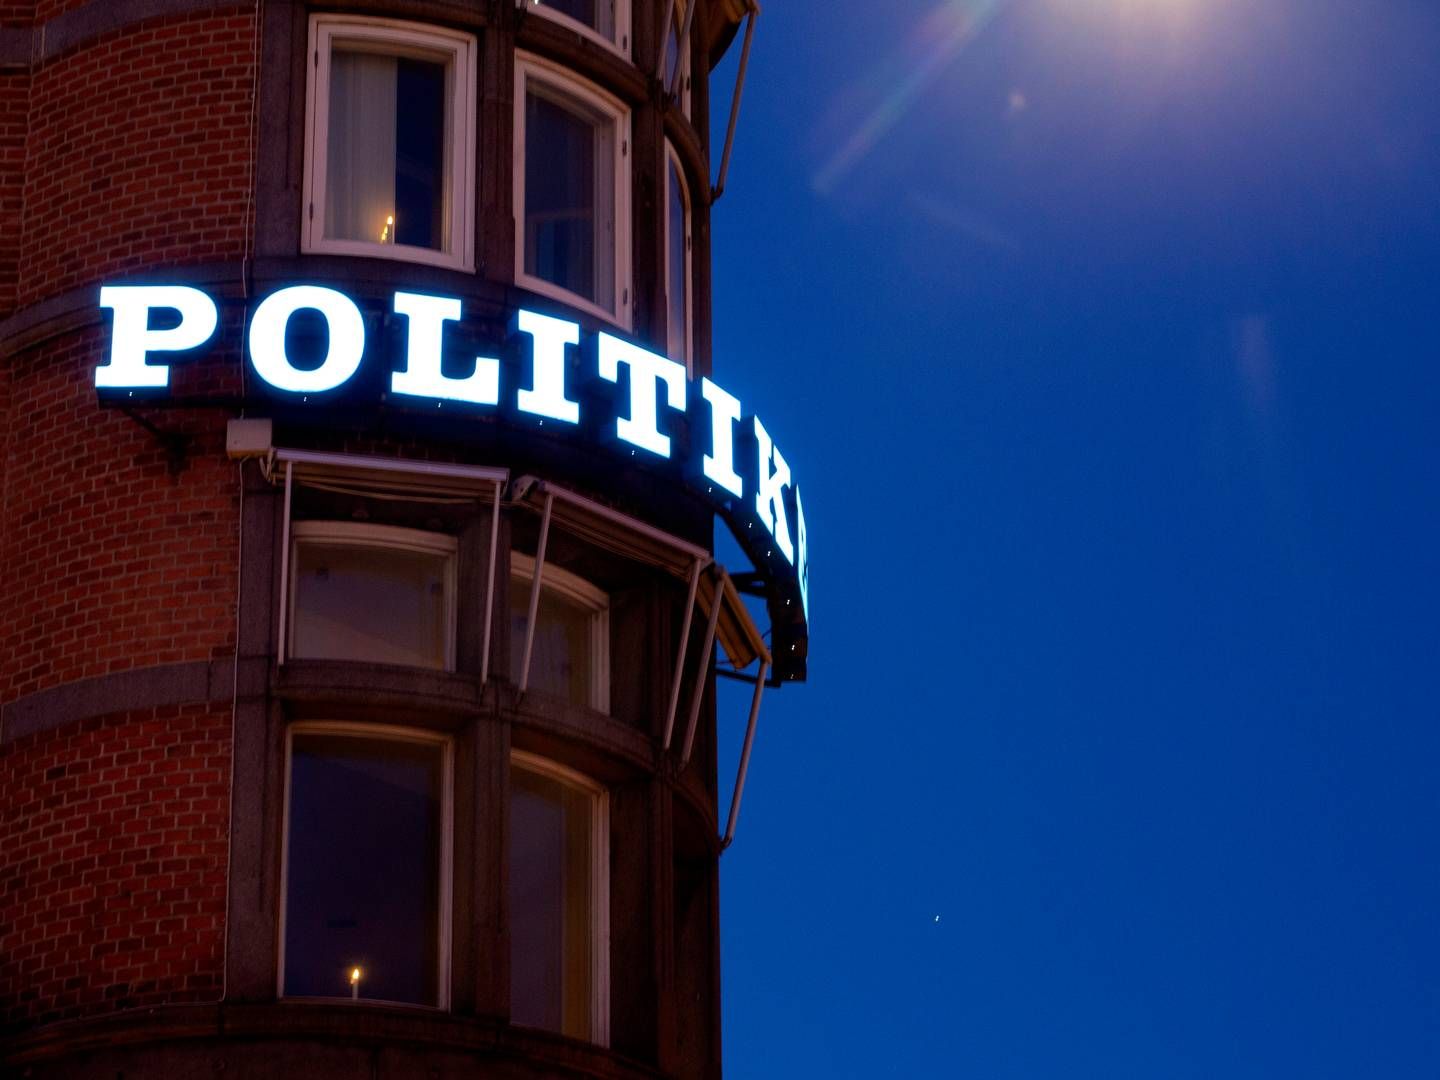 J/P Politikens Hus ejer Dao, der ifølge Fagbladet har haft problemer med flere arbejdsforhold. | Foto: Mads Nissen/Ritzau Scanpix